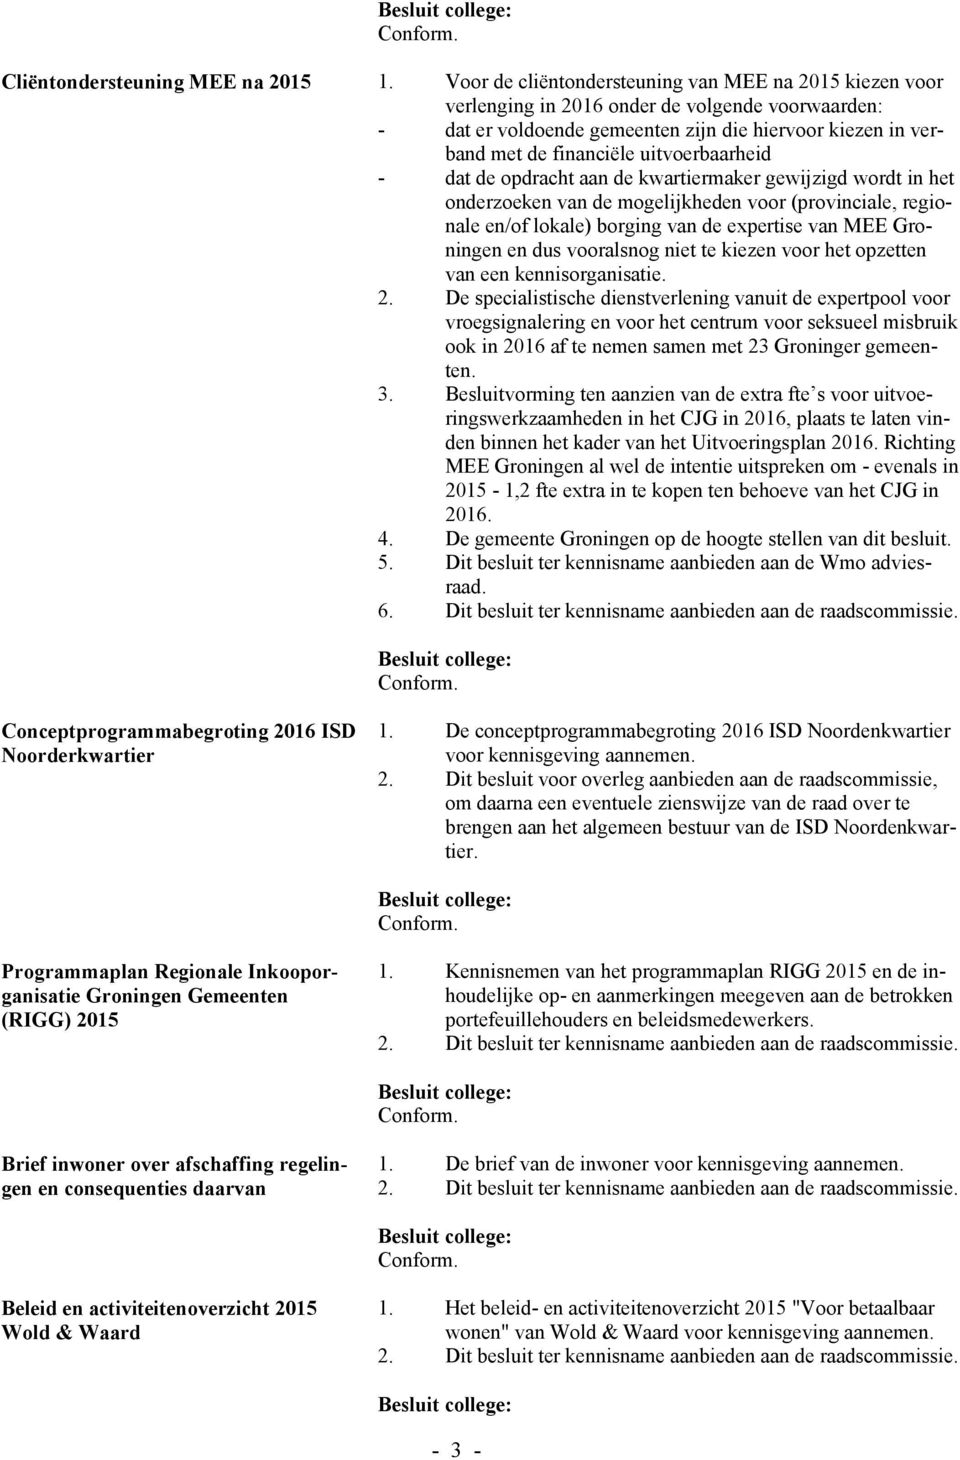 uitvoerbaarheid - dat de opdracht aan de kwartiermaker gewijzigd wordt in het onderzoeken van de mogelijkheden voor (provinciale, regionale en/of lokale) borging van de expertise van MEE Groningen en